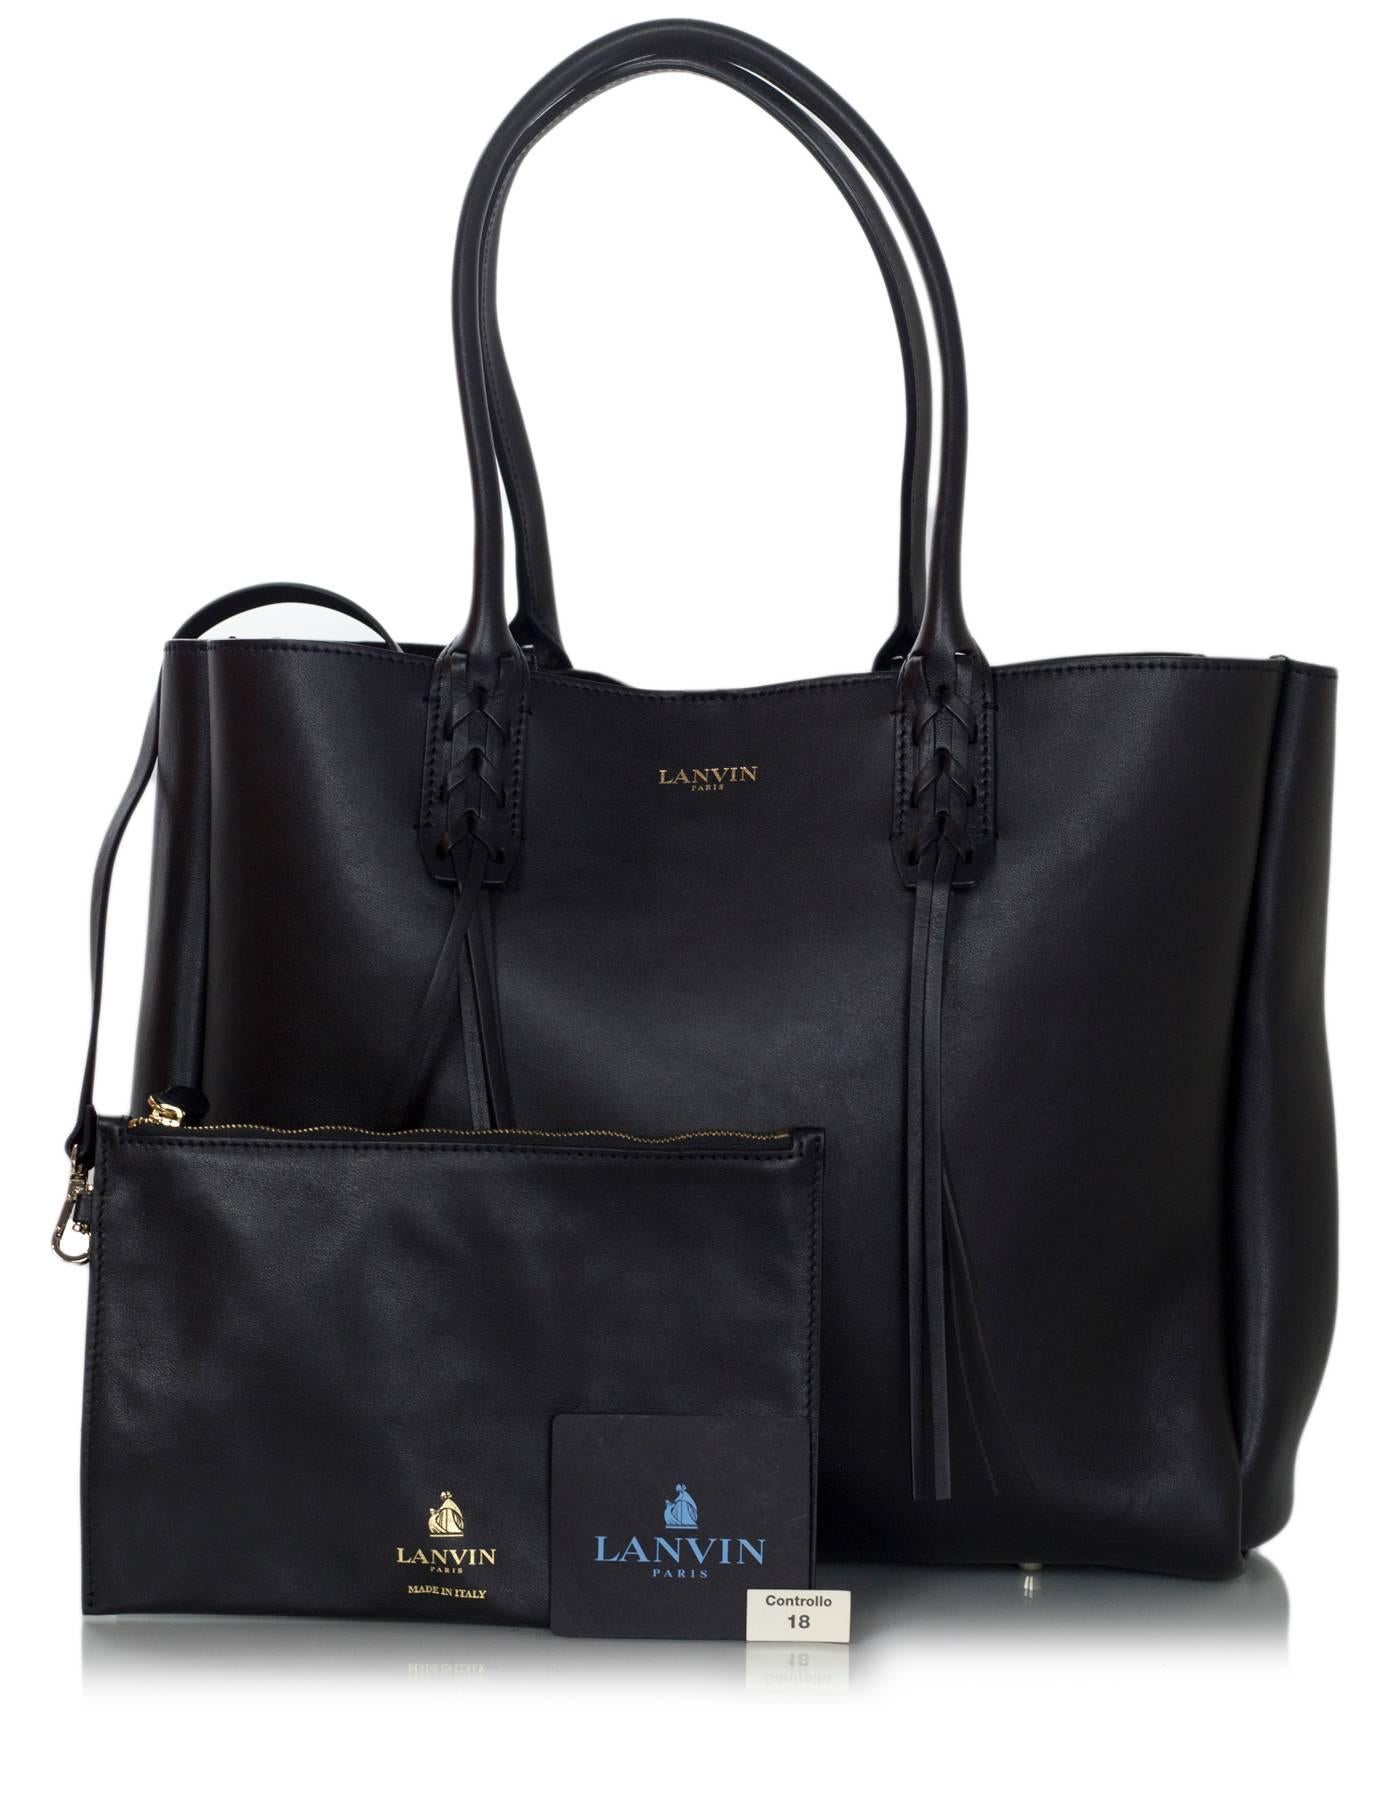 Women's or Men's Lanvin Black Leather Fringe Tote Bag